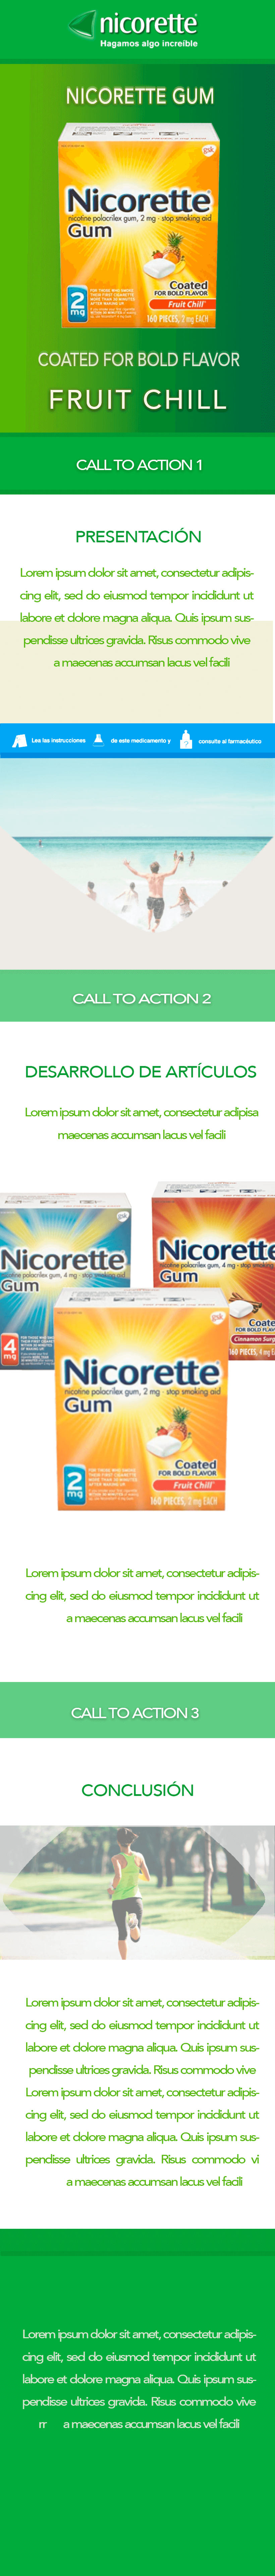 Propuestas Newsletter Nicorette Gum 3